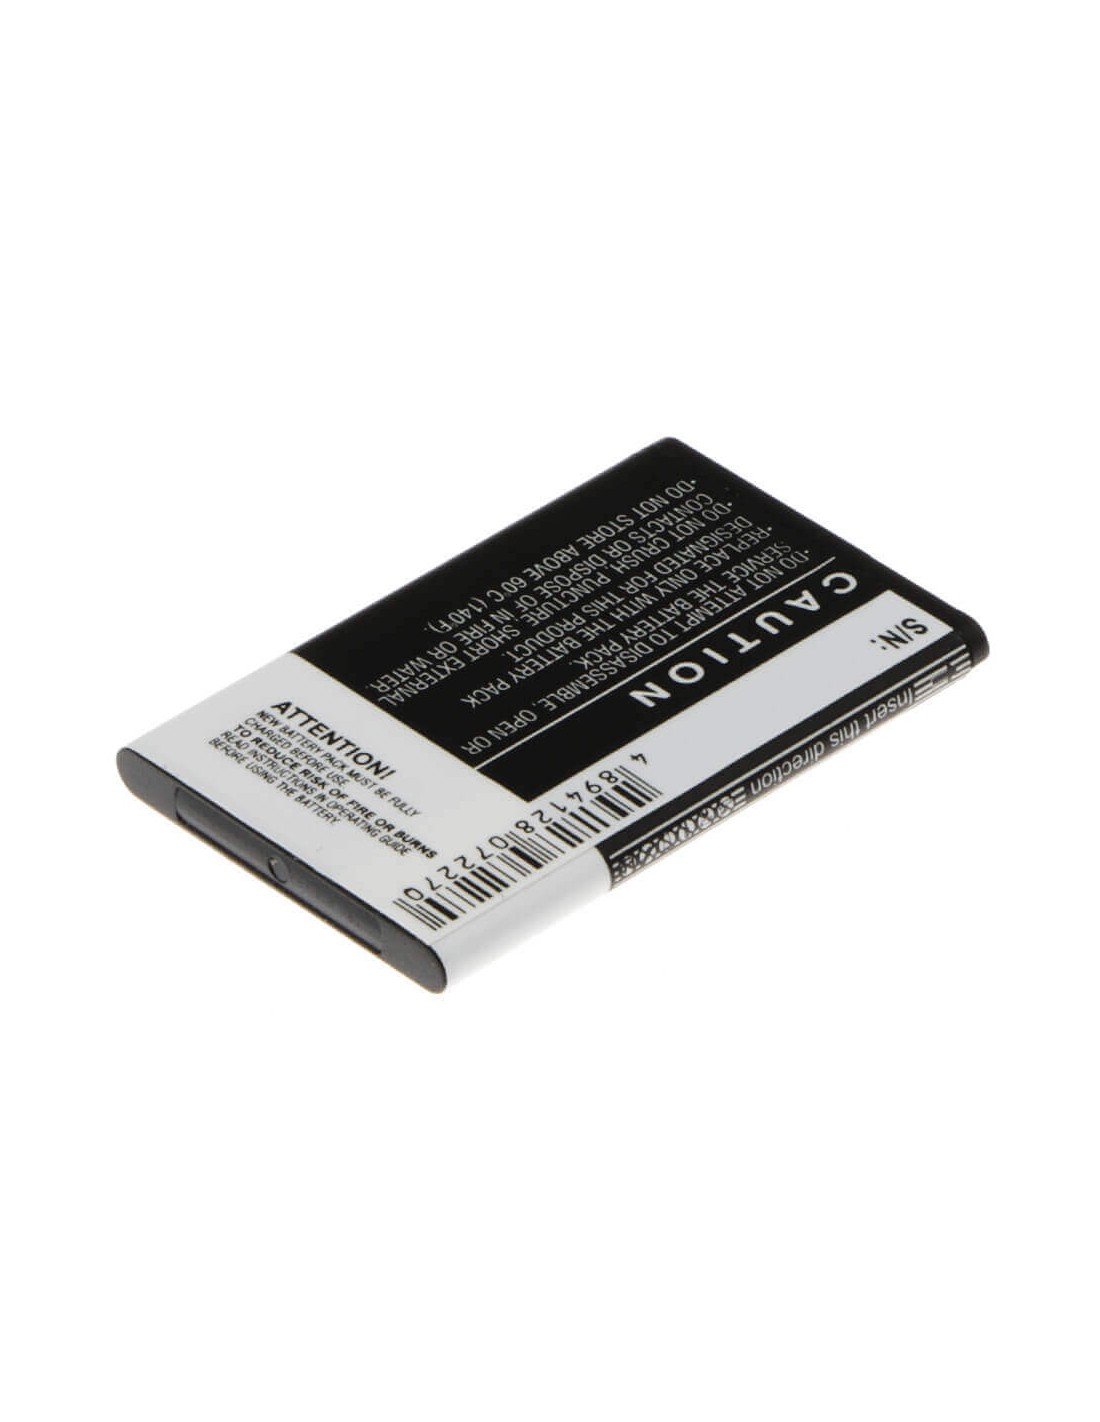 Battery for Emporia Telme C140 3.7V, 900mAh - 3.33Wh